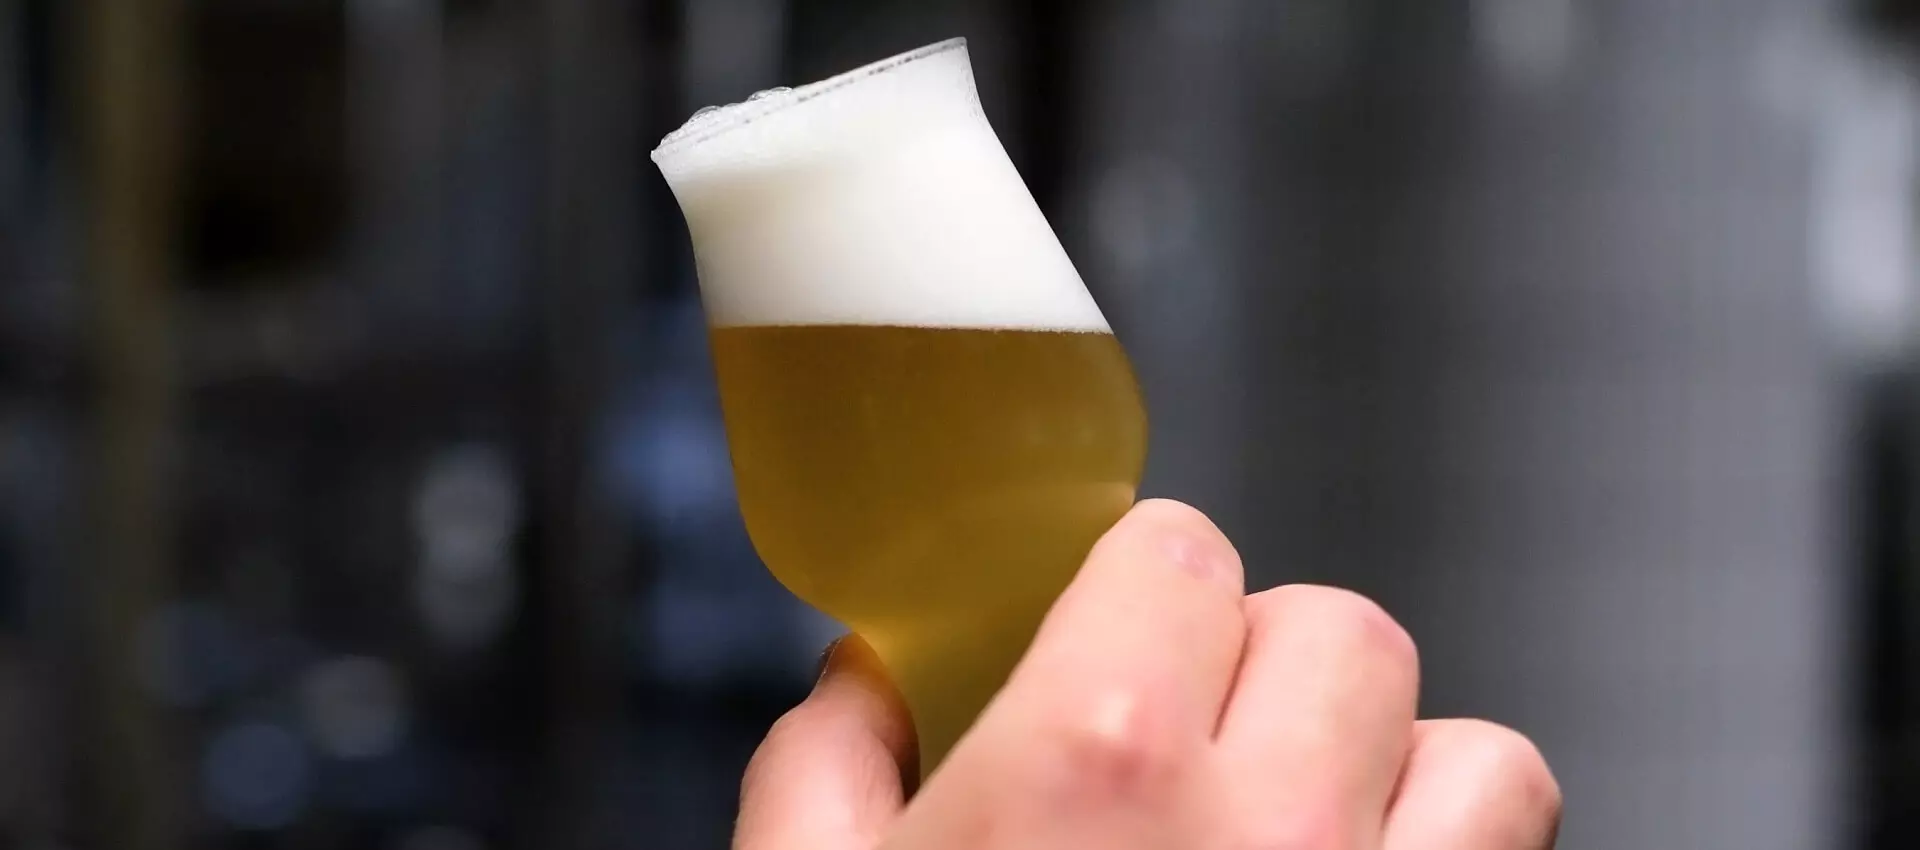 Bierprobe zur Qualitätskontrolle des Bieres der Flensburger Brauerei im Probierglas.